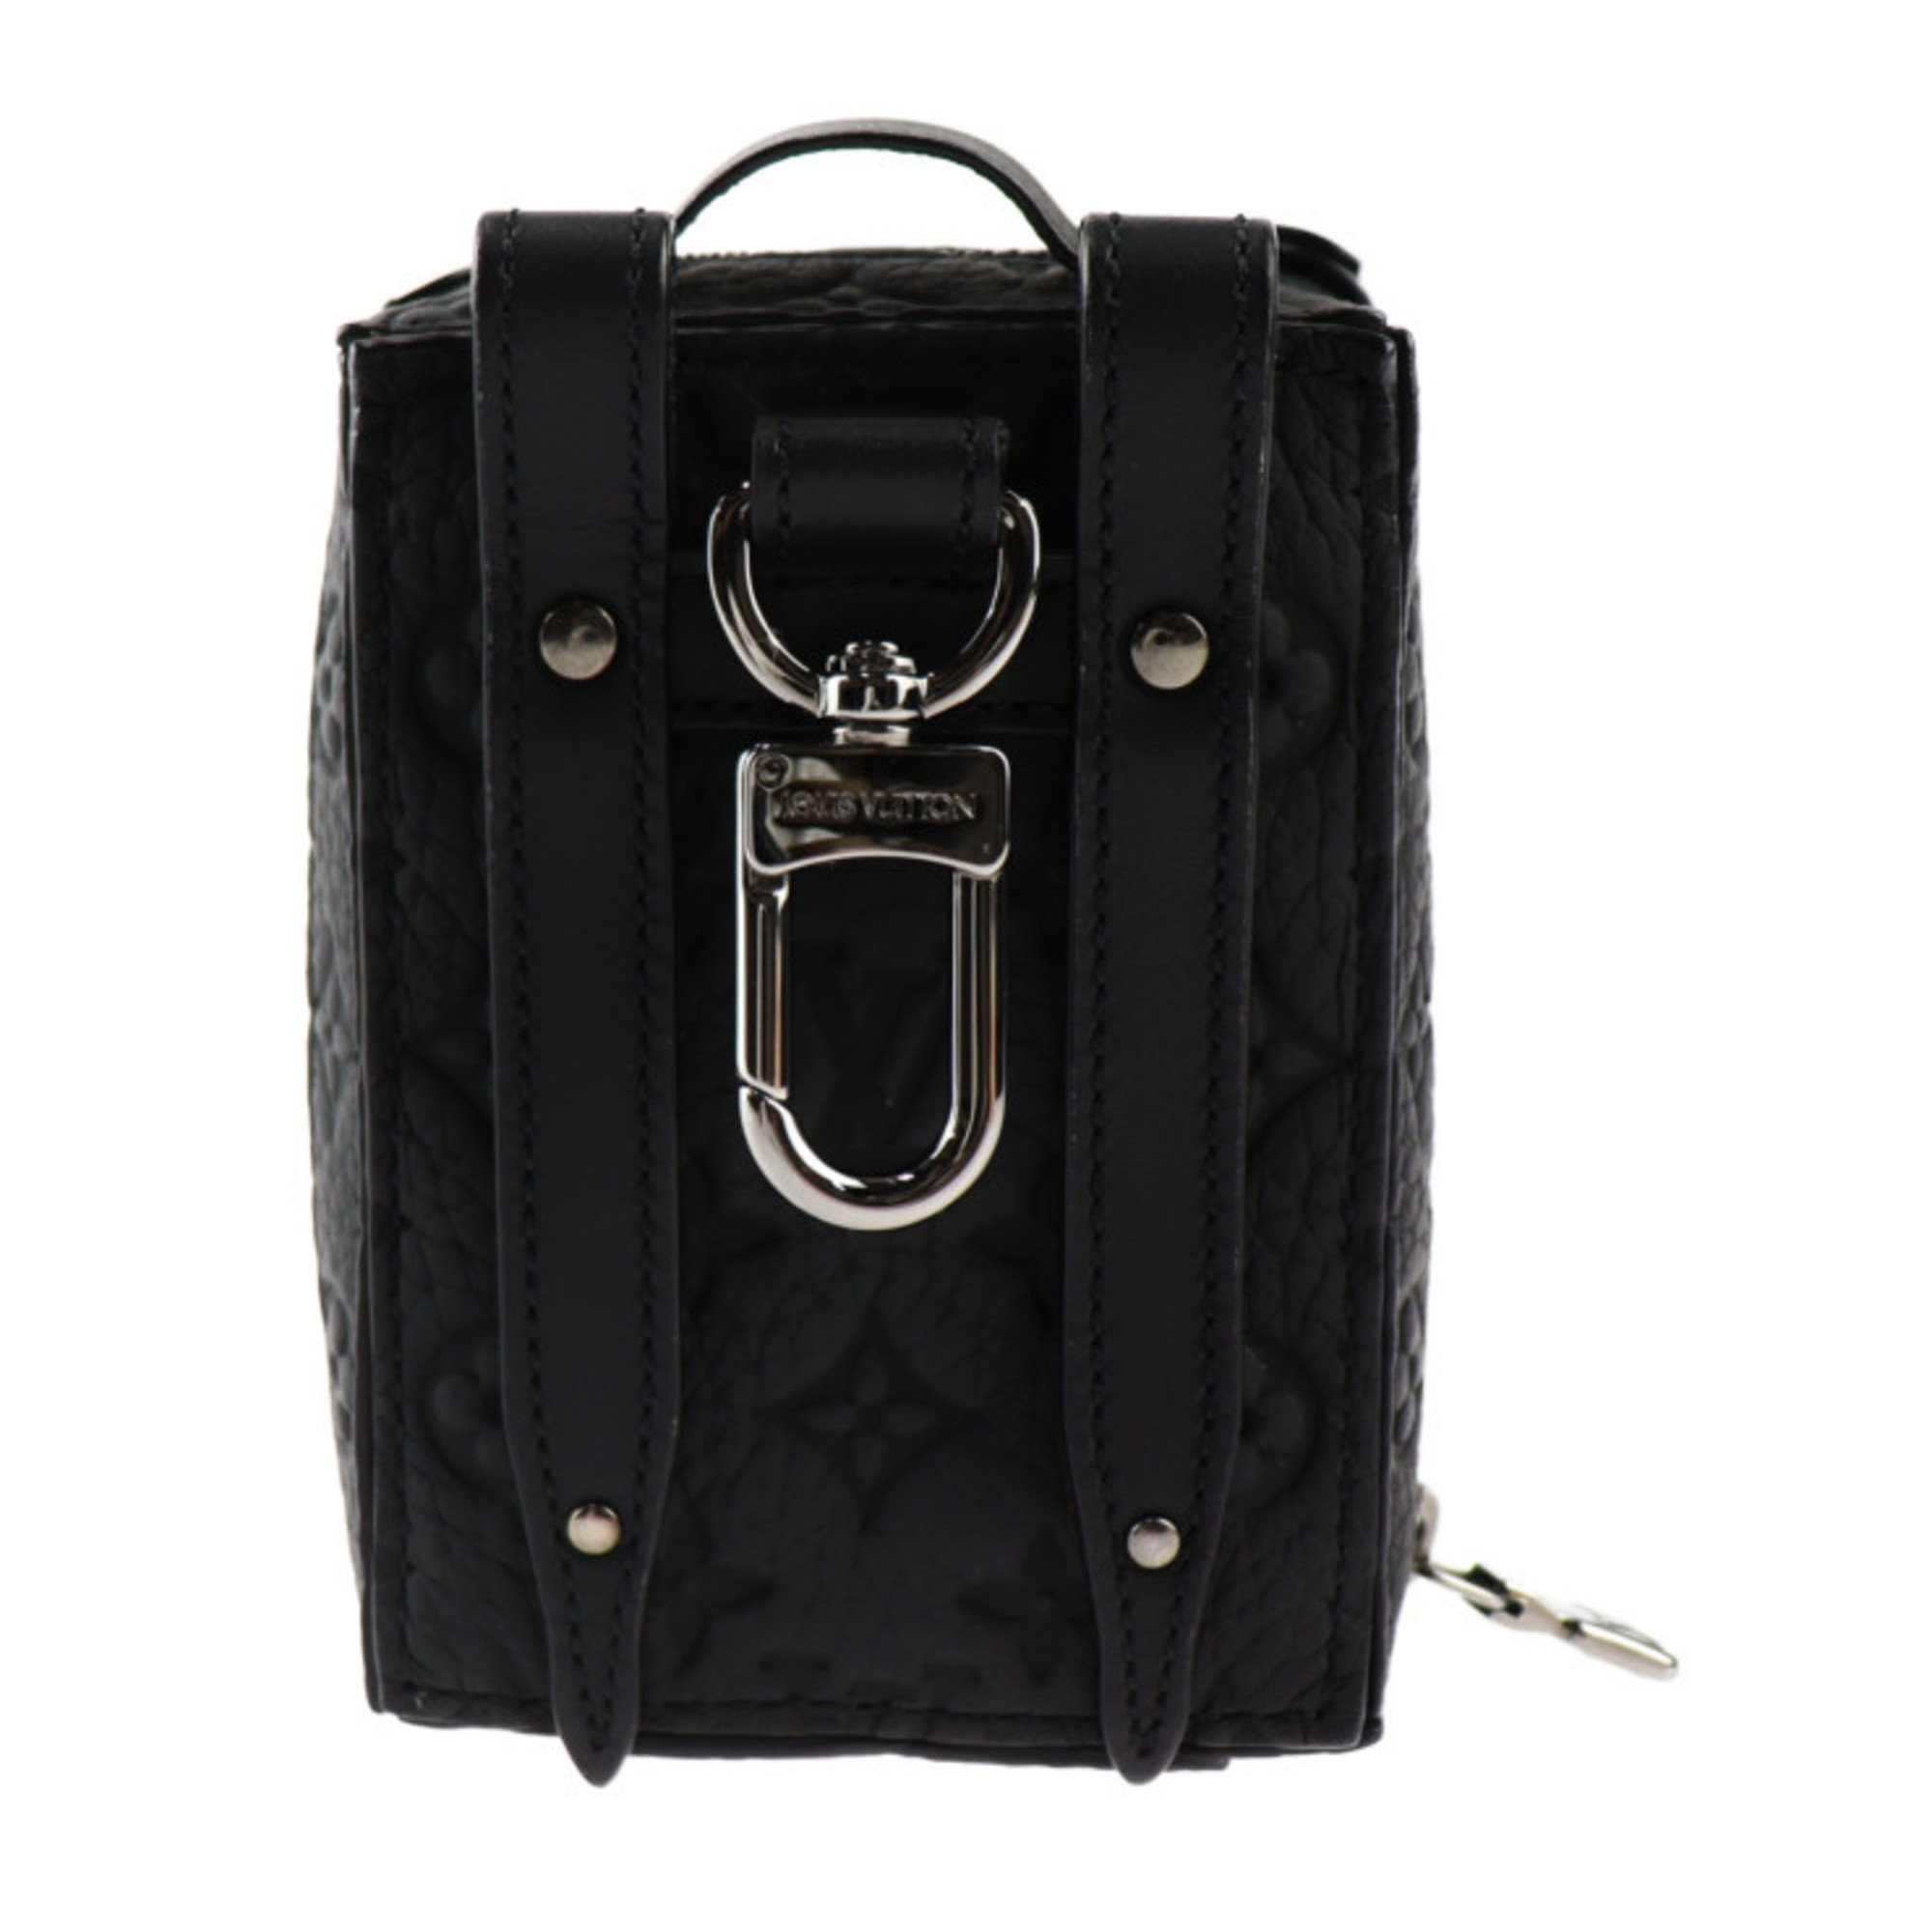 LOUIS VUITTON Porte Clé Backpack Trunk Monogram Keychain M00850 Taurillon Leather Black Bag Charm Vuitton